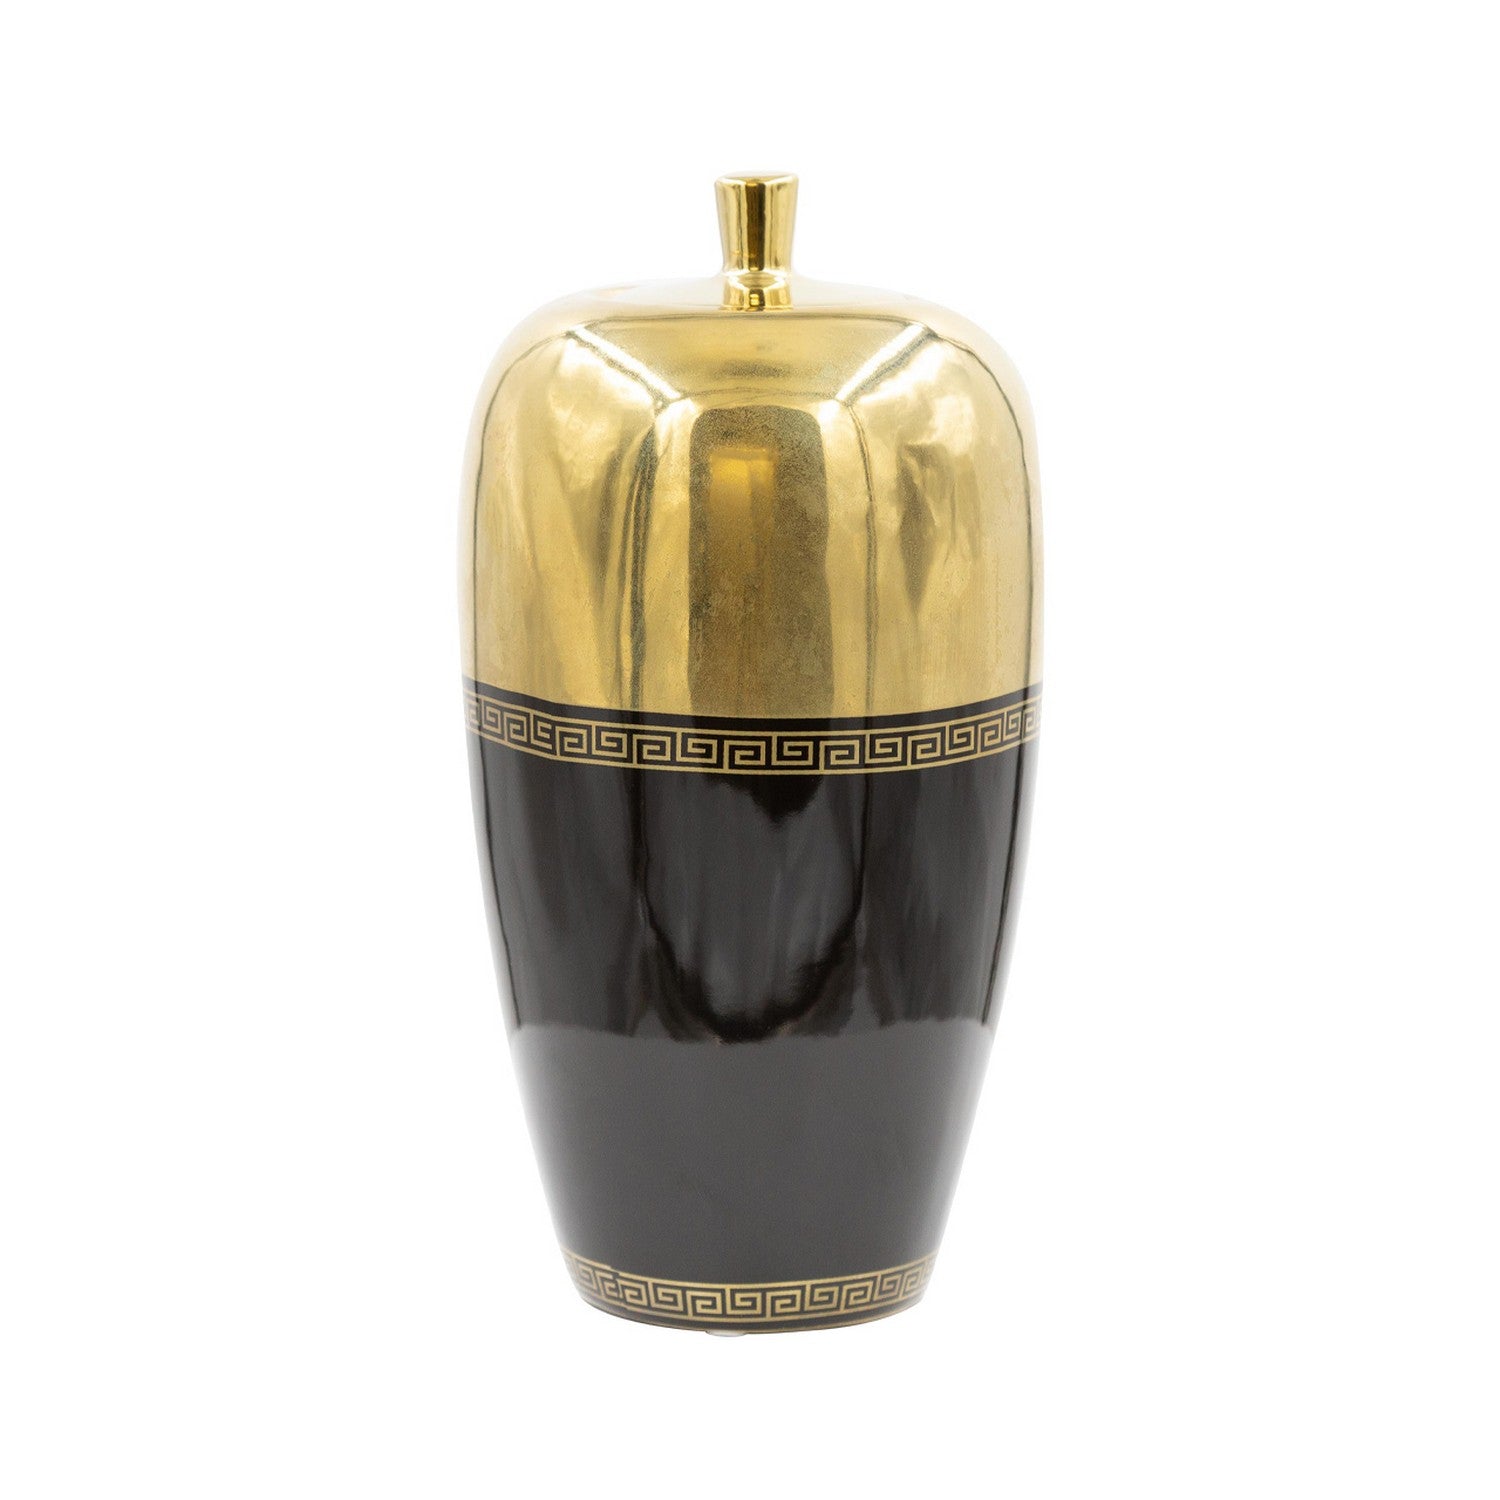 25cm Black & Gold Greek Pear Shaped Ginger Jar